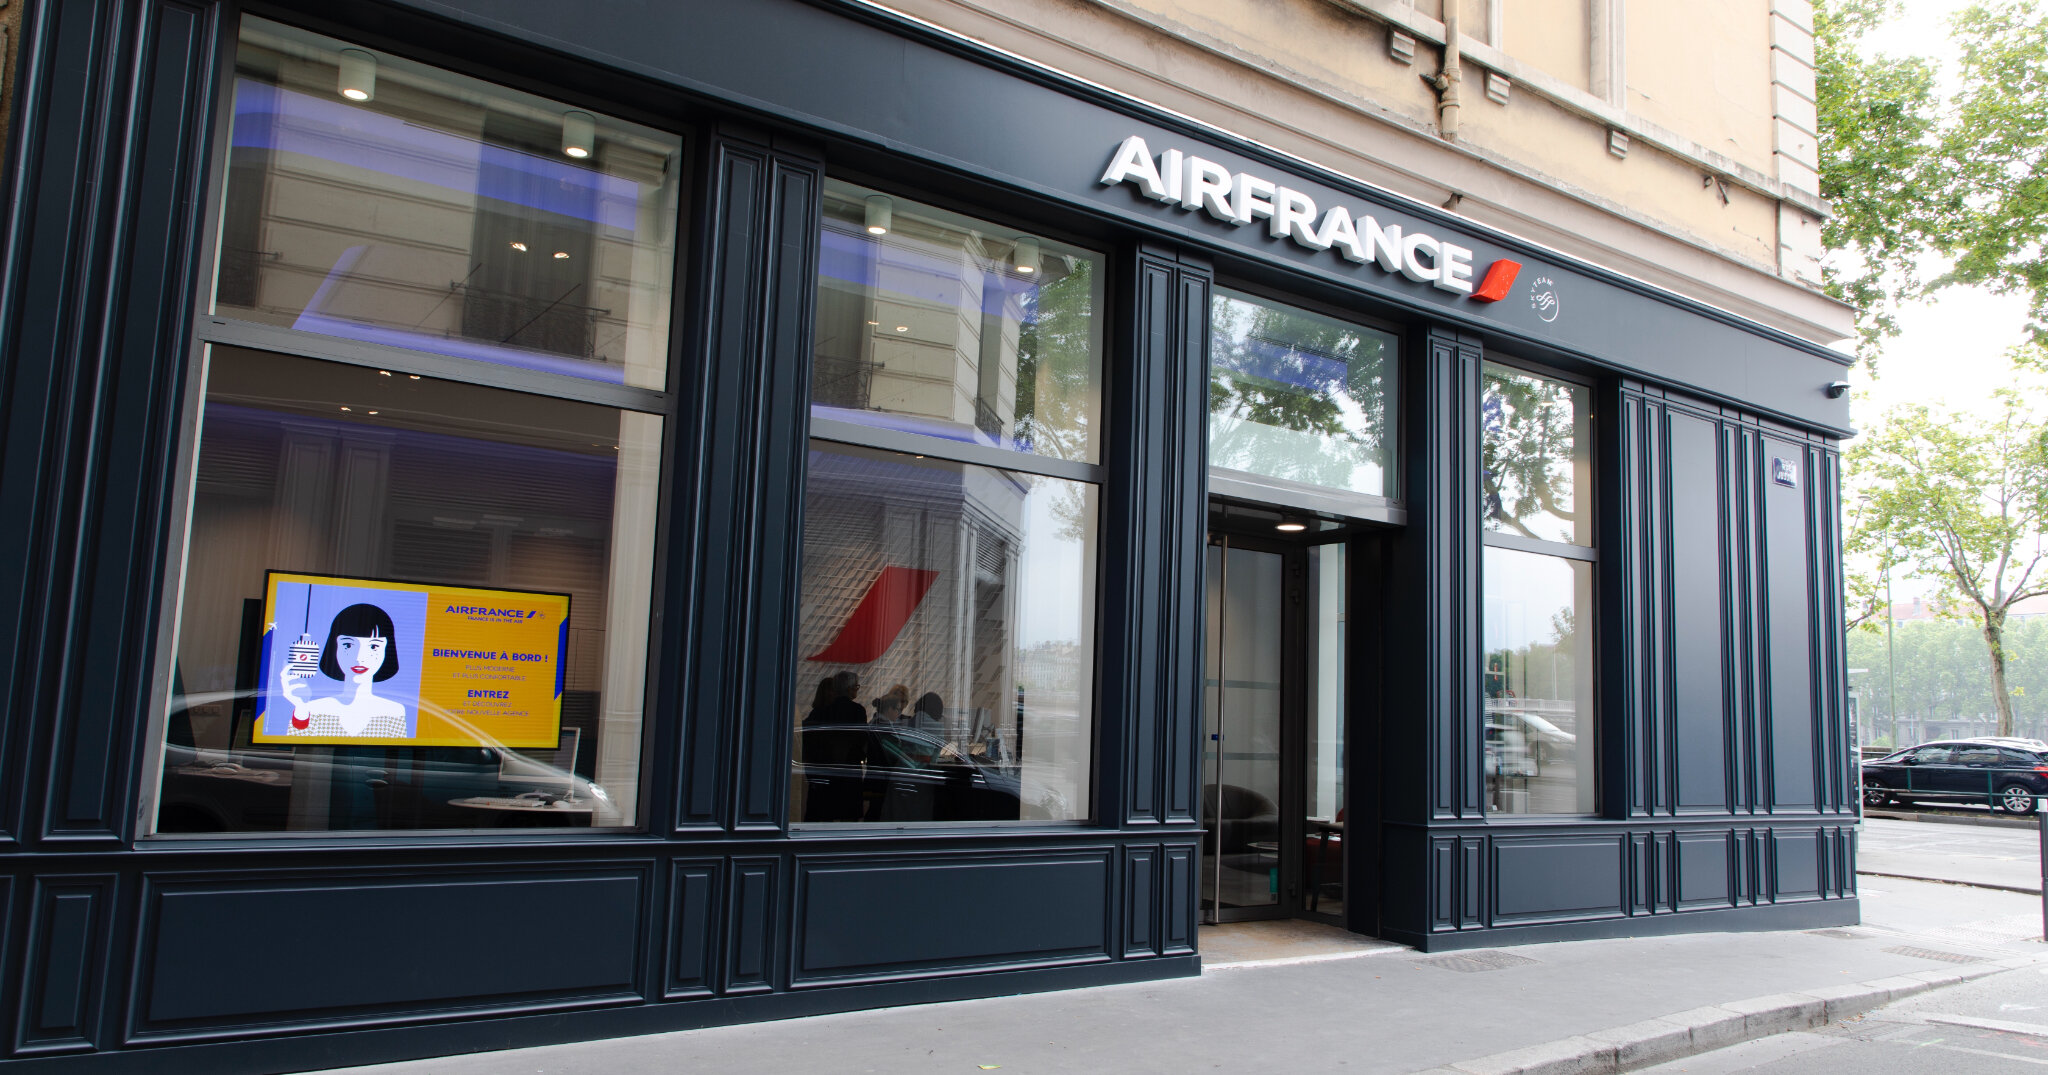 Air France inaugure son nouveau concept d’agence à Lyon  OHLALAIR LE